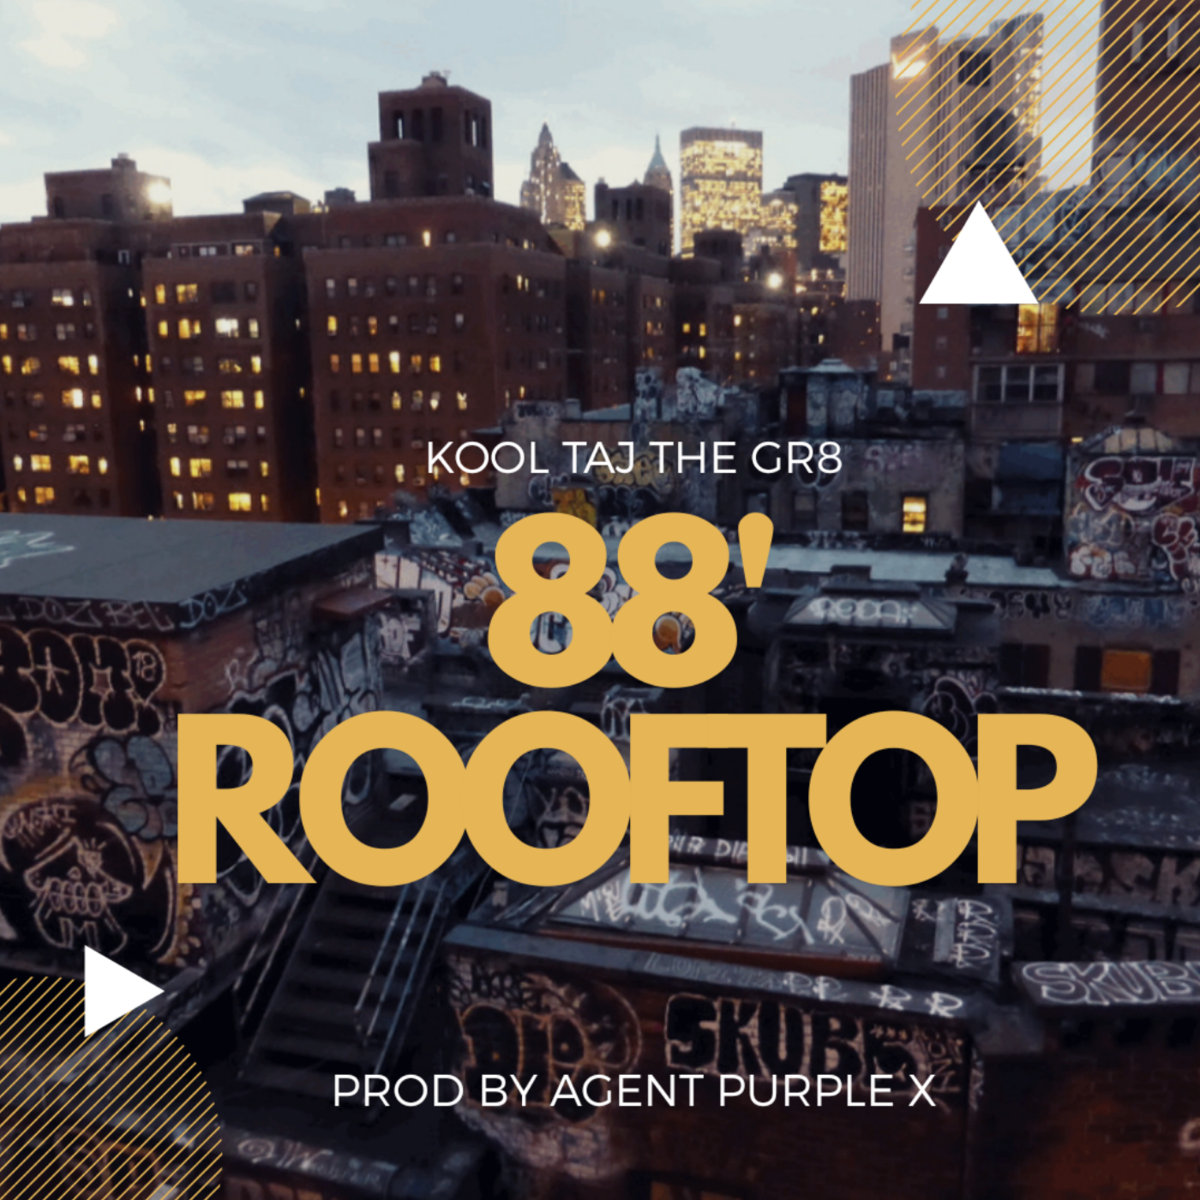 New Music! Kool Taj The Gr8 “88′” Rooftop @KoolTajTheGr8